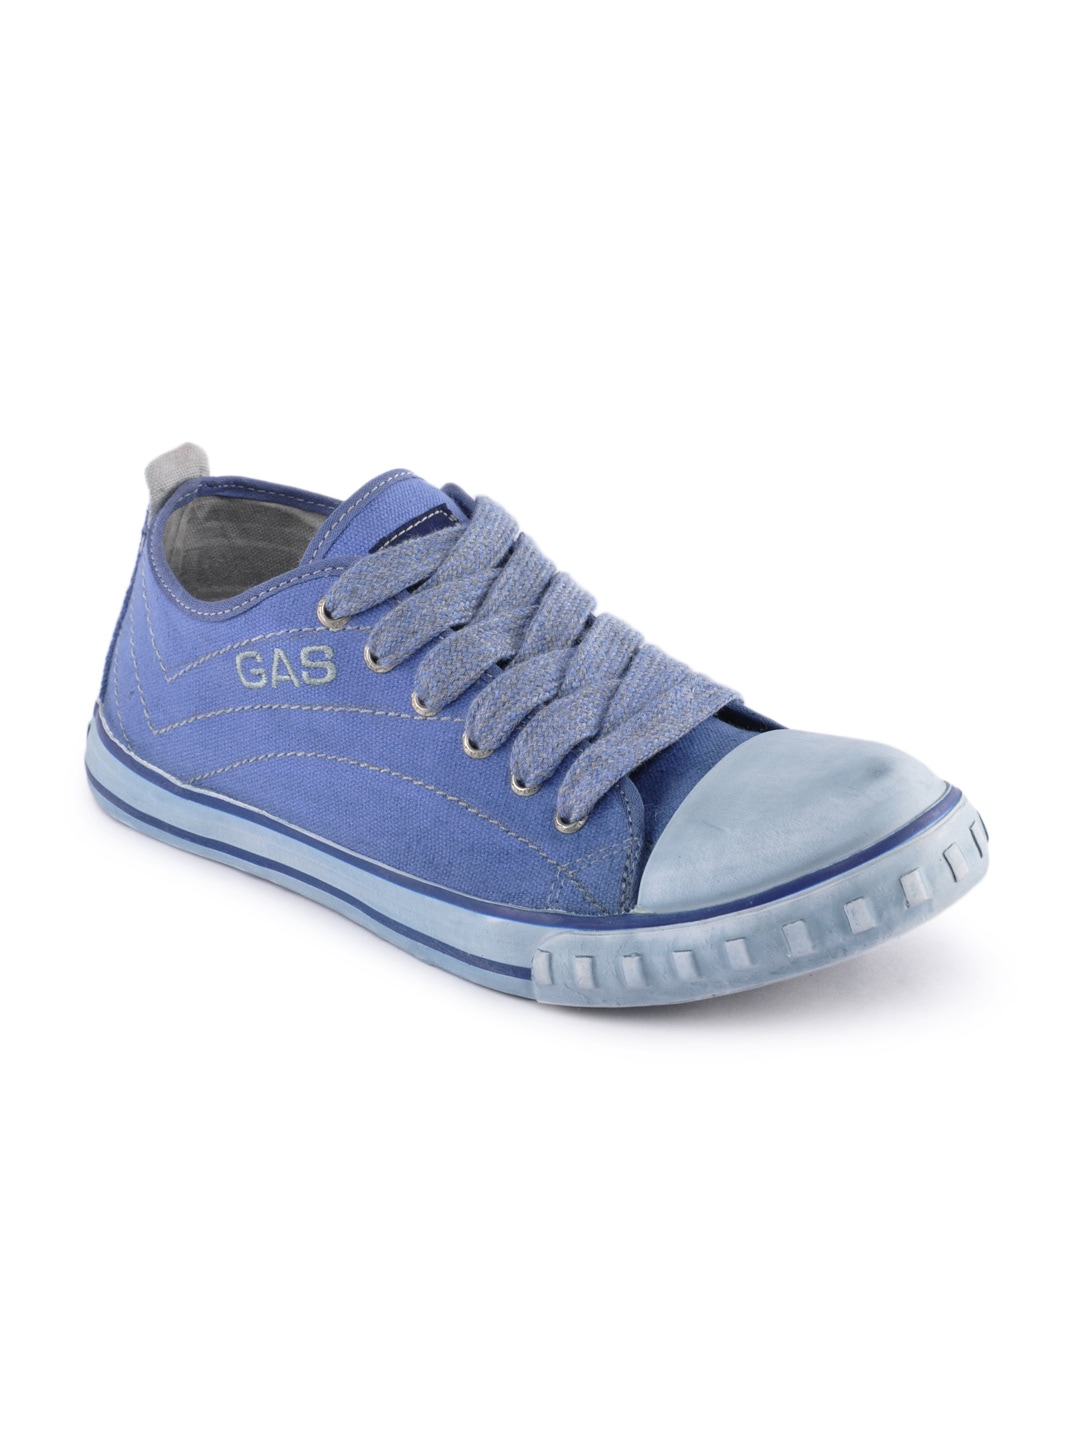 Gas Men Passtime Blue Casual Shoes